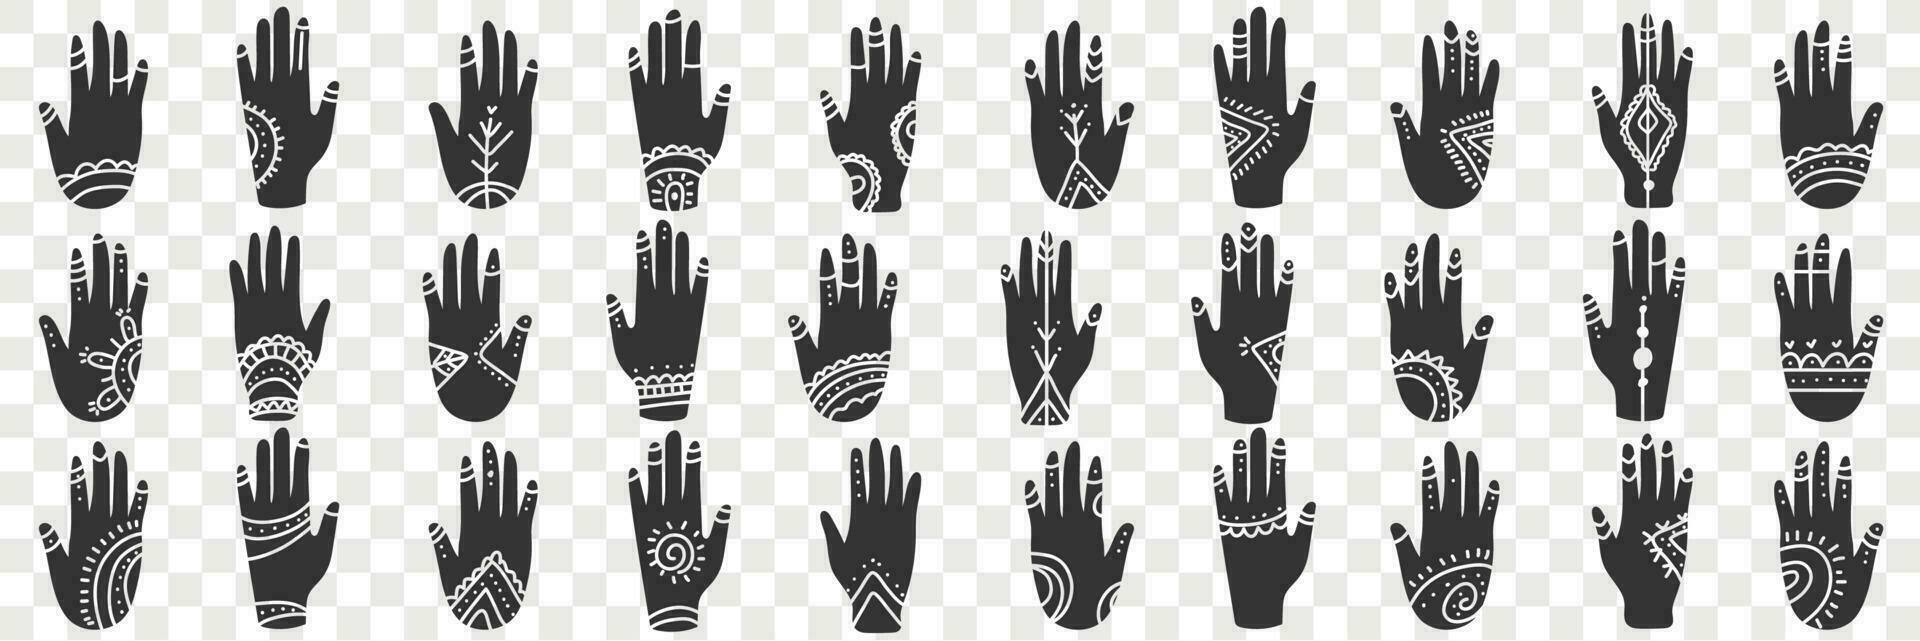 umano mani con occulto segni scarabocchio impostare. collezione di mano disegnato vario nero umano mani con spirituale segni e simboli nel righe isolato su trasparente vettore